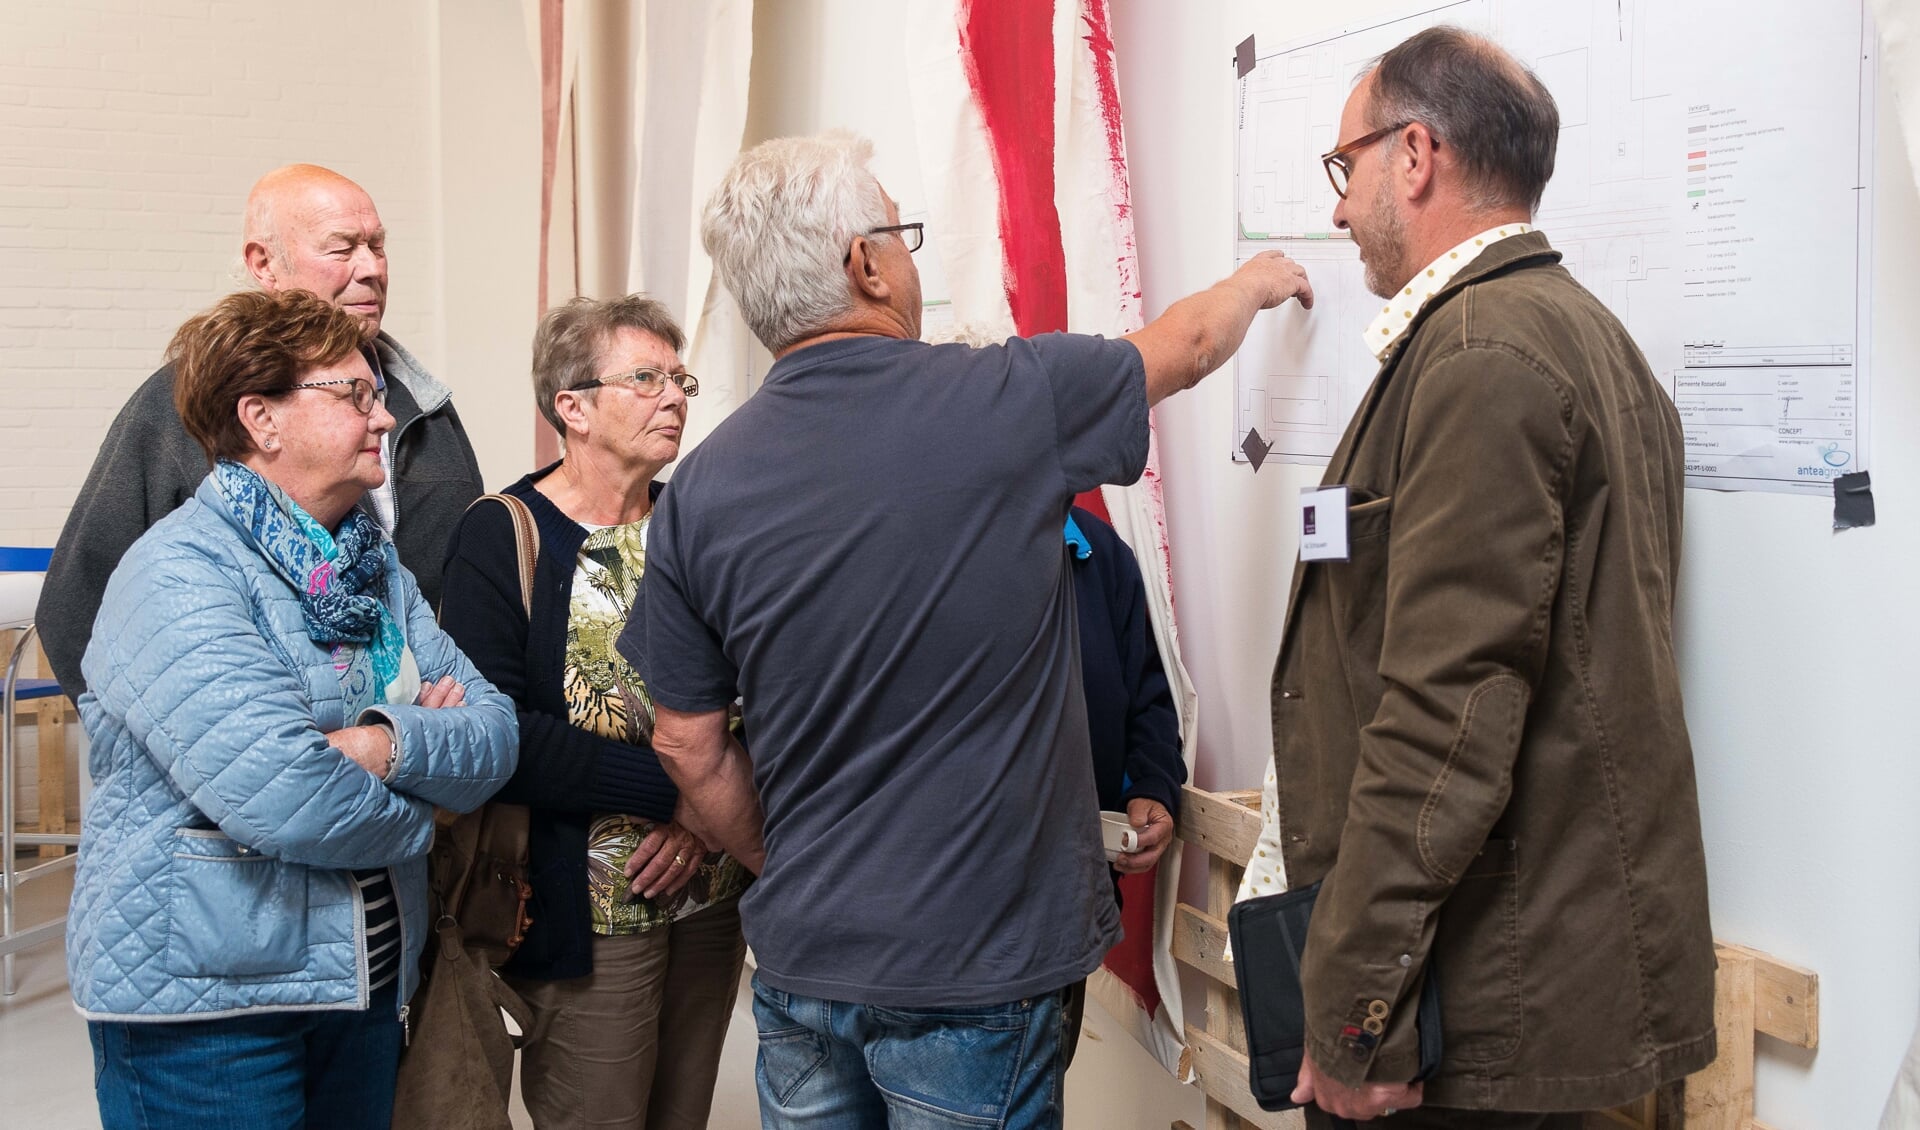 Bezoekers laten zich informeren door medewerkers gemeenten. FOTO CORINE ROKS